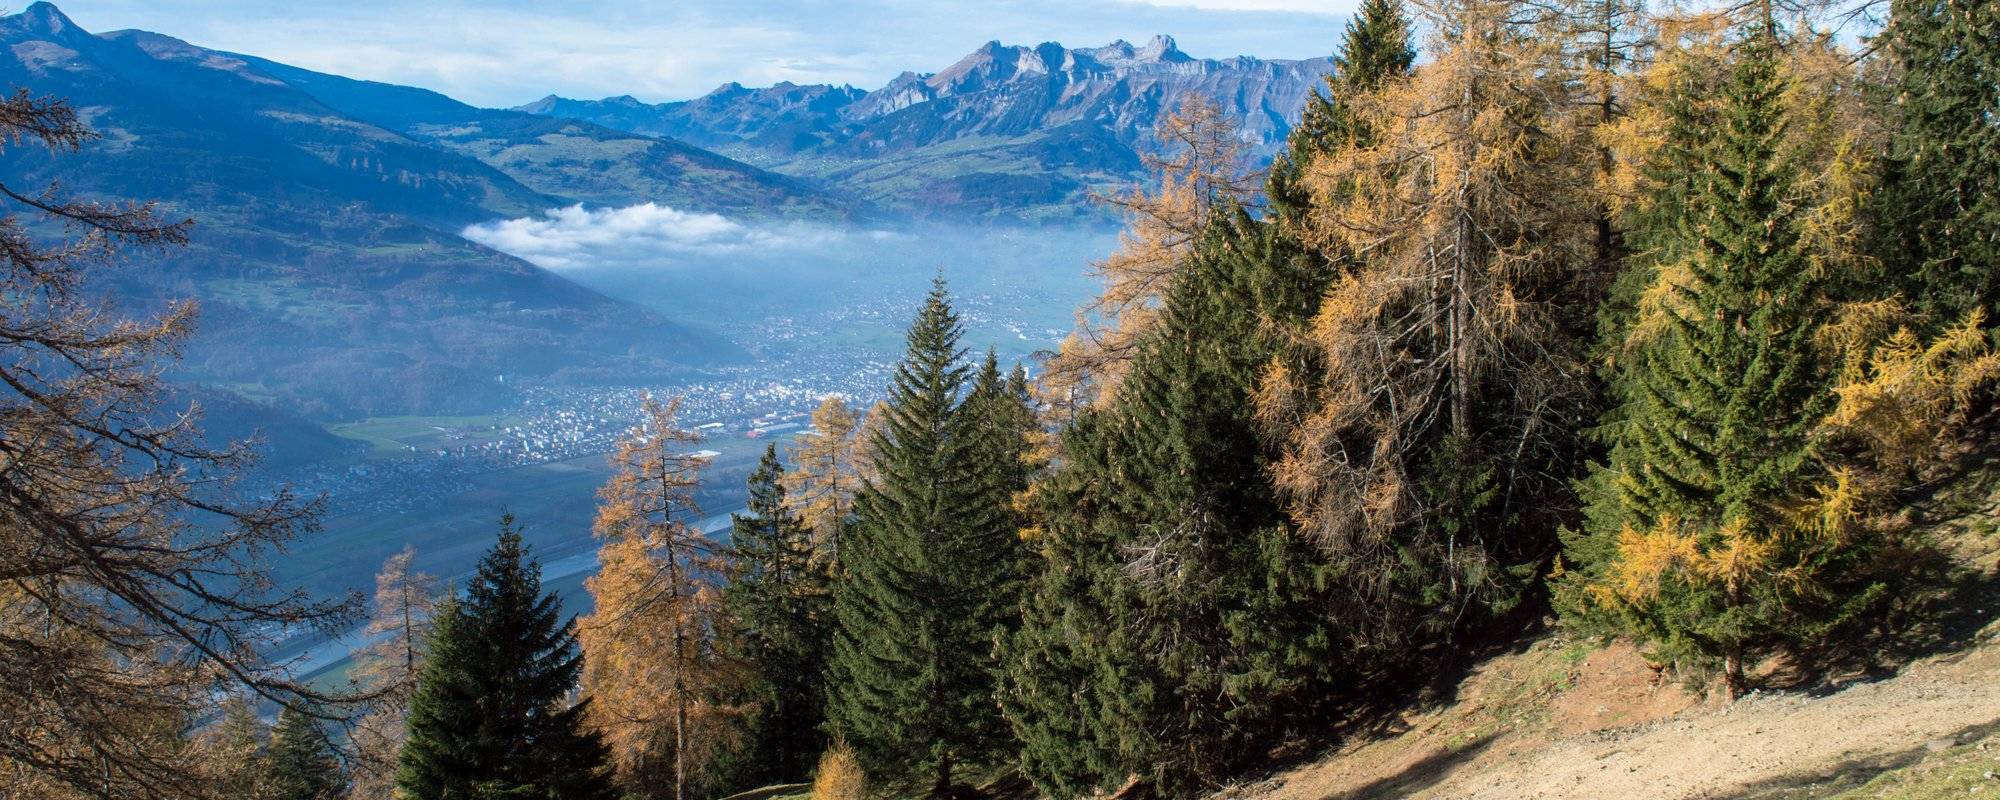 Travel adventures - a sunny day in Liechtenstein